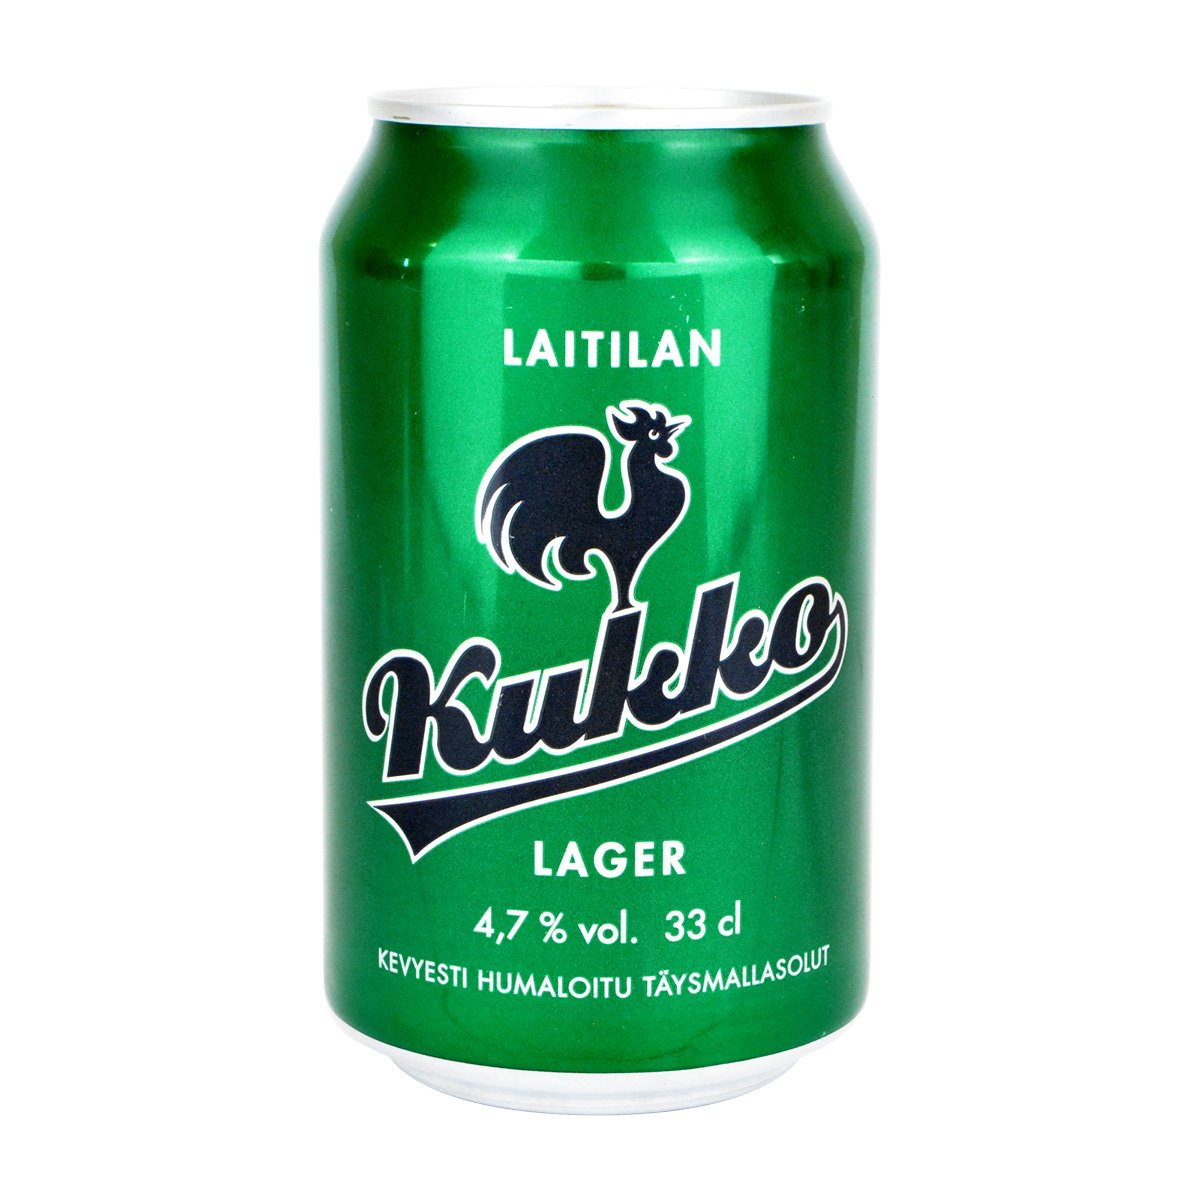 Laitilan ライティラン Kukko クッコ ビール ラガー（アルコール飲料)